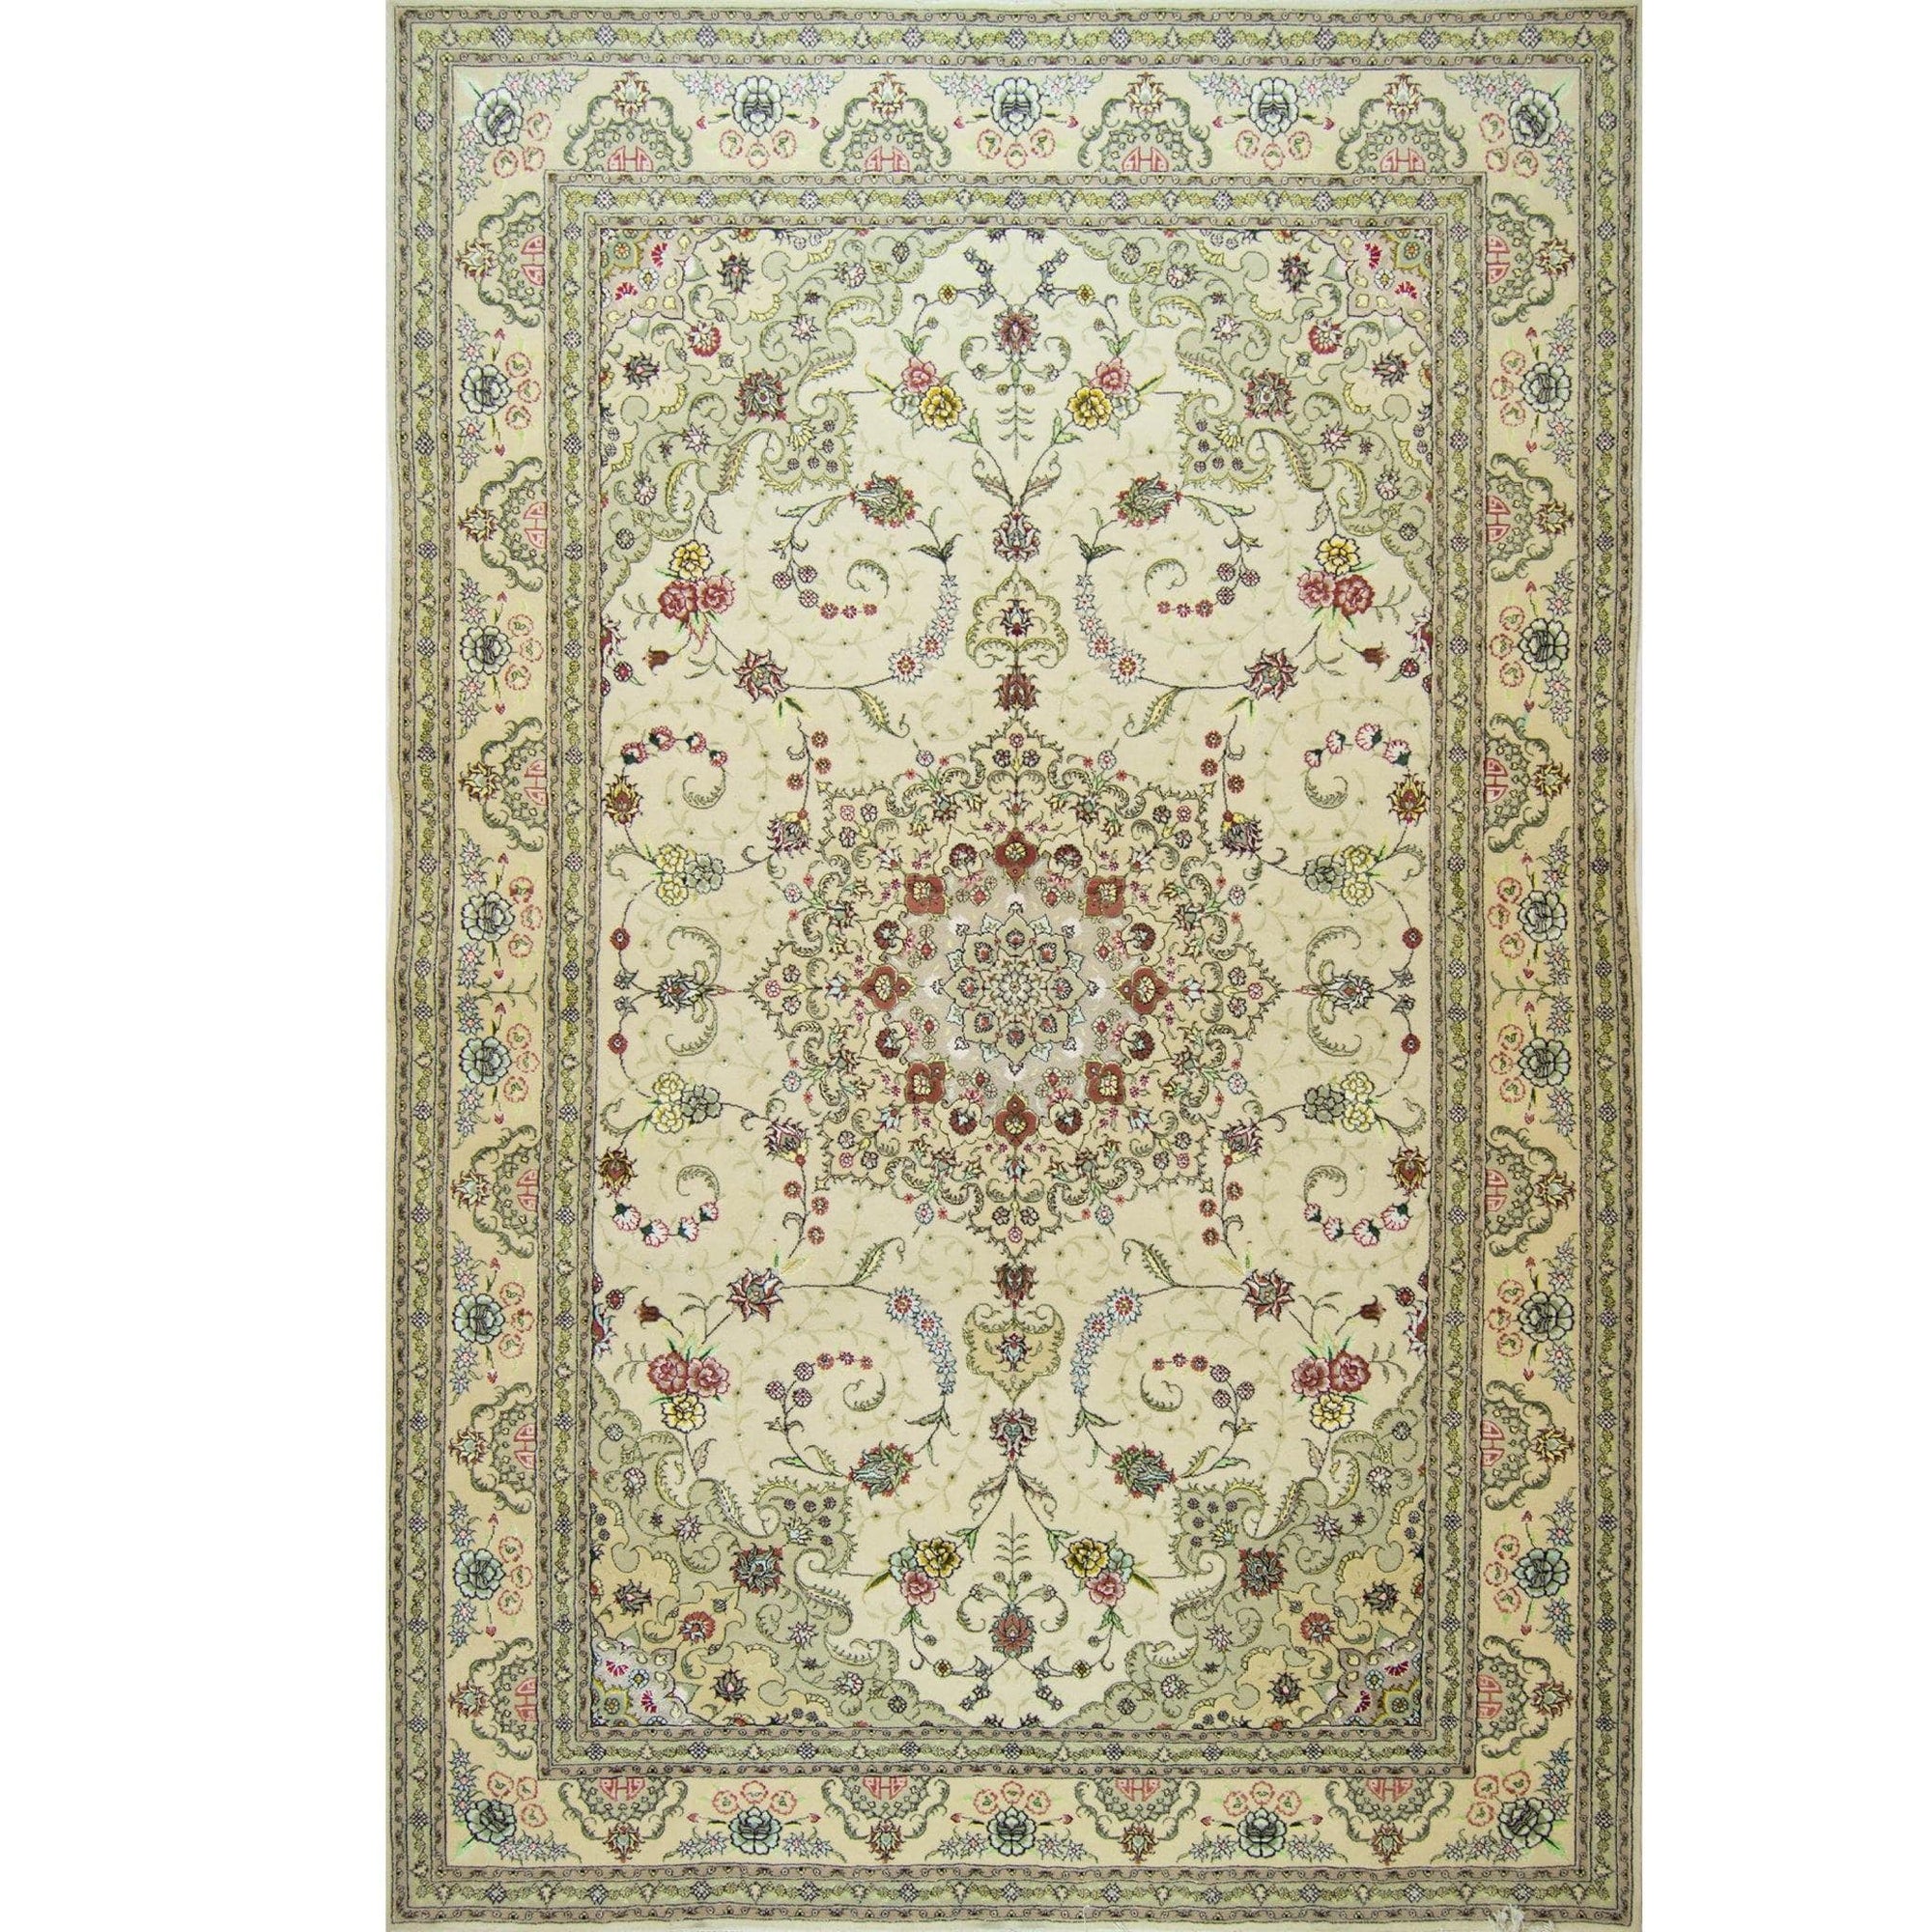 Fine Hand-knotted Wool & Silk Tabriz Rug 183cm x 274cm | 40098